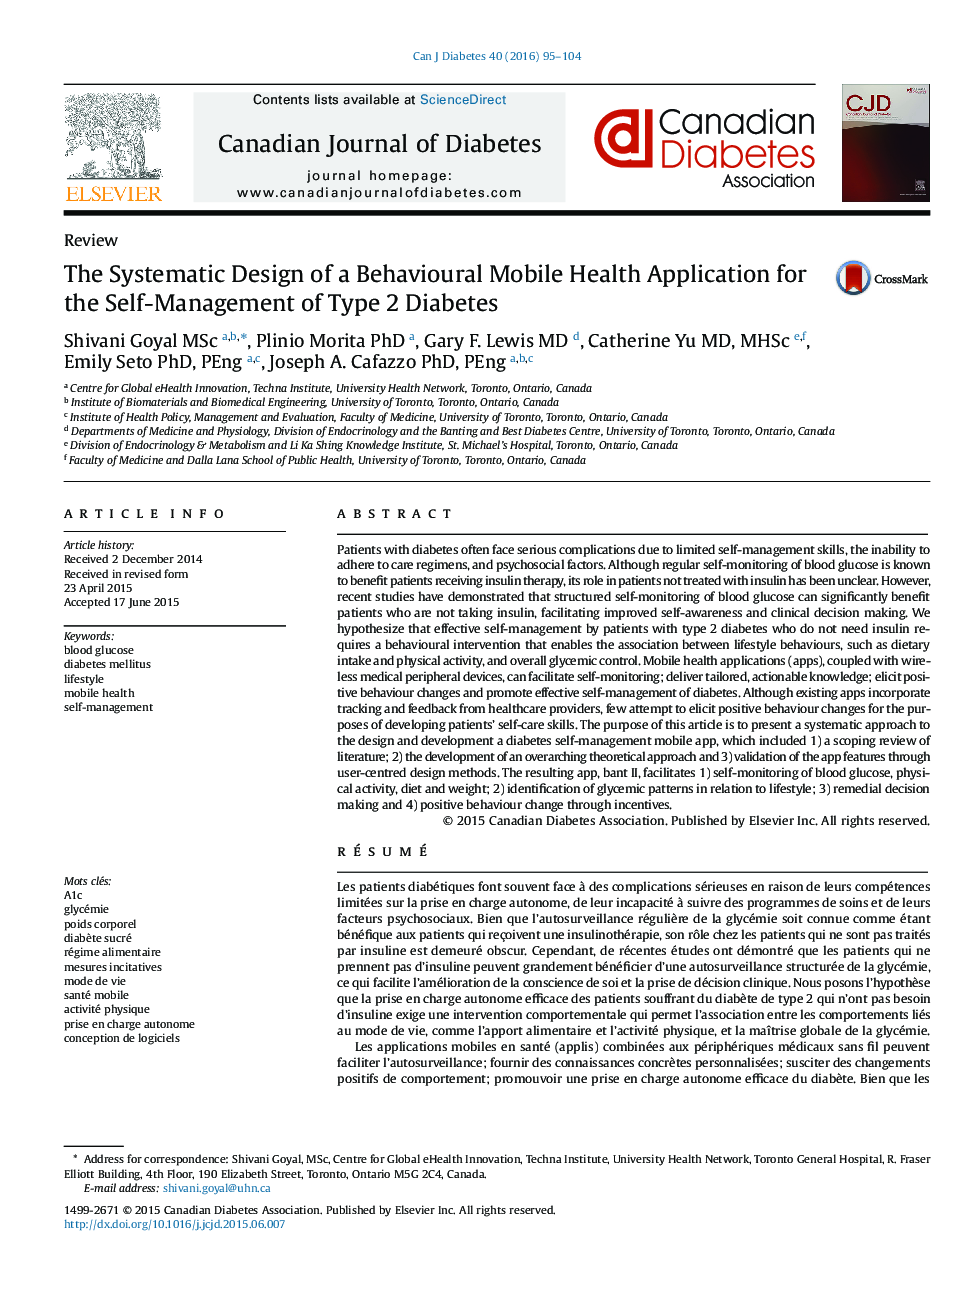 طراحی سیستماتیک برنامه بهداشتی رفتاری موبایل برای خودمدیریتی دیابت نوع 2